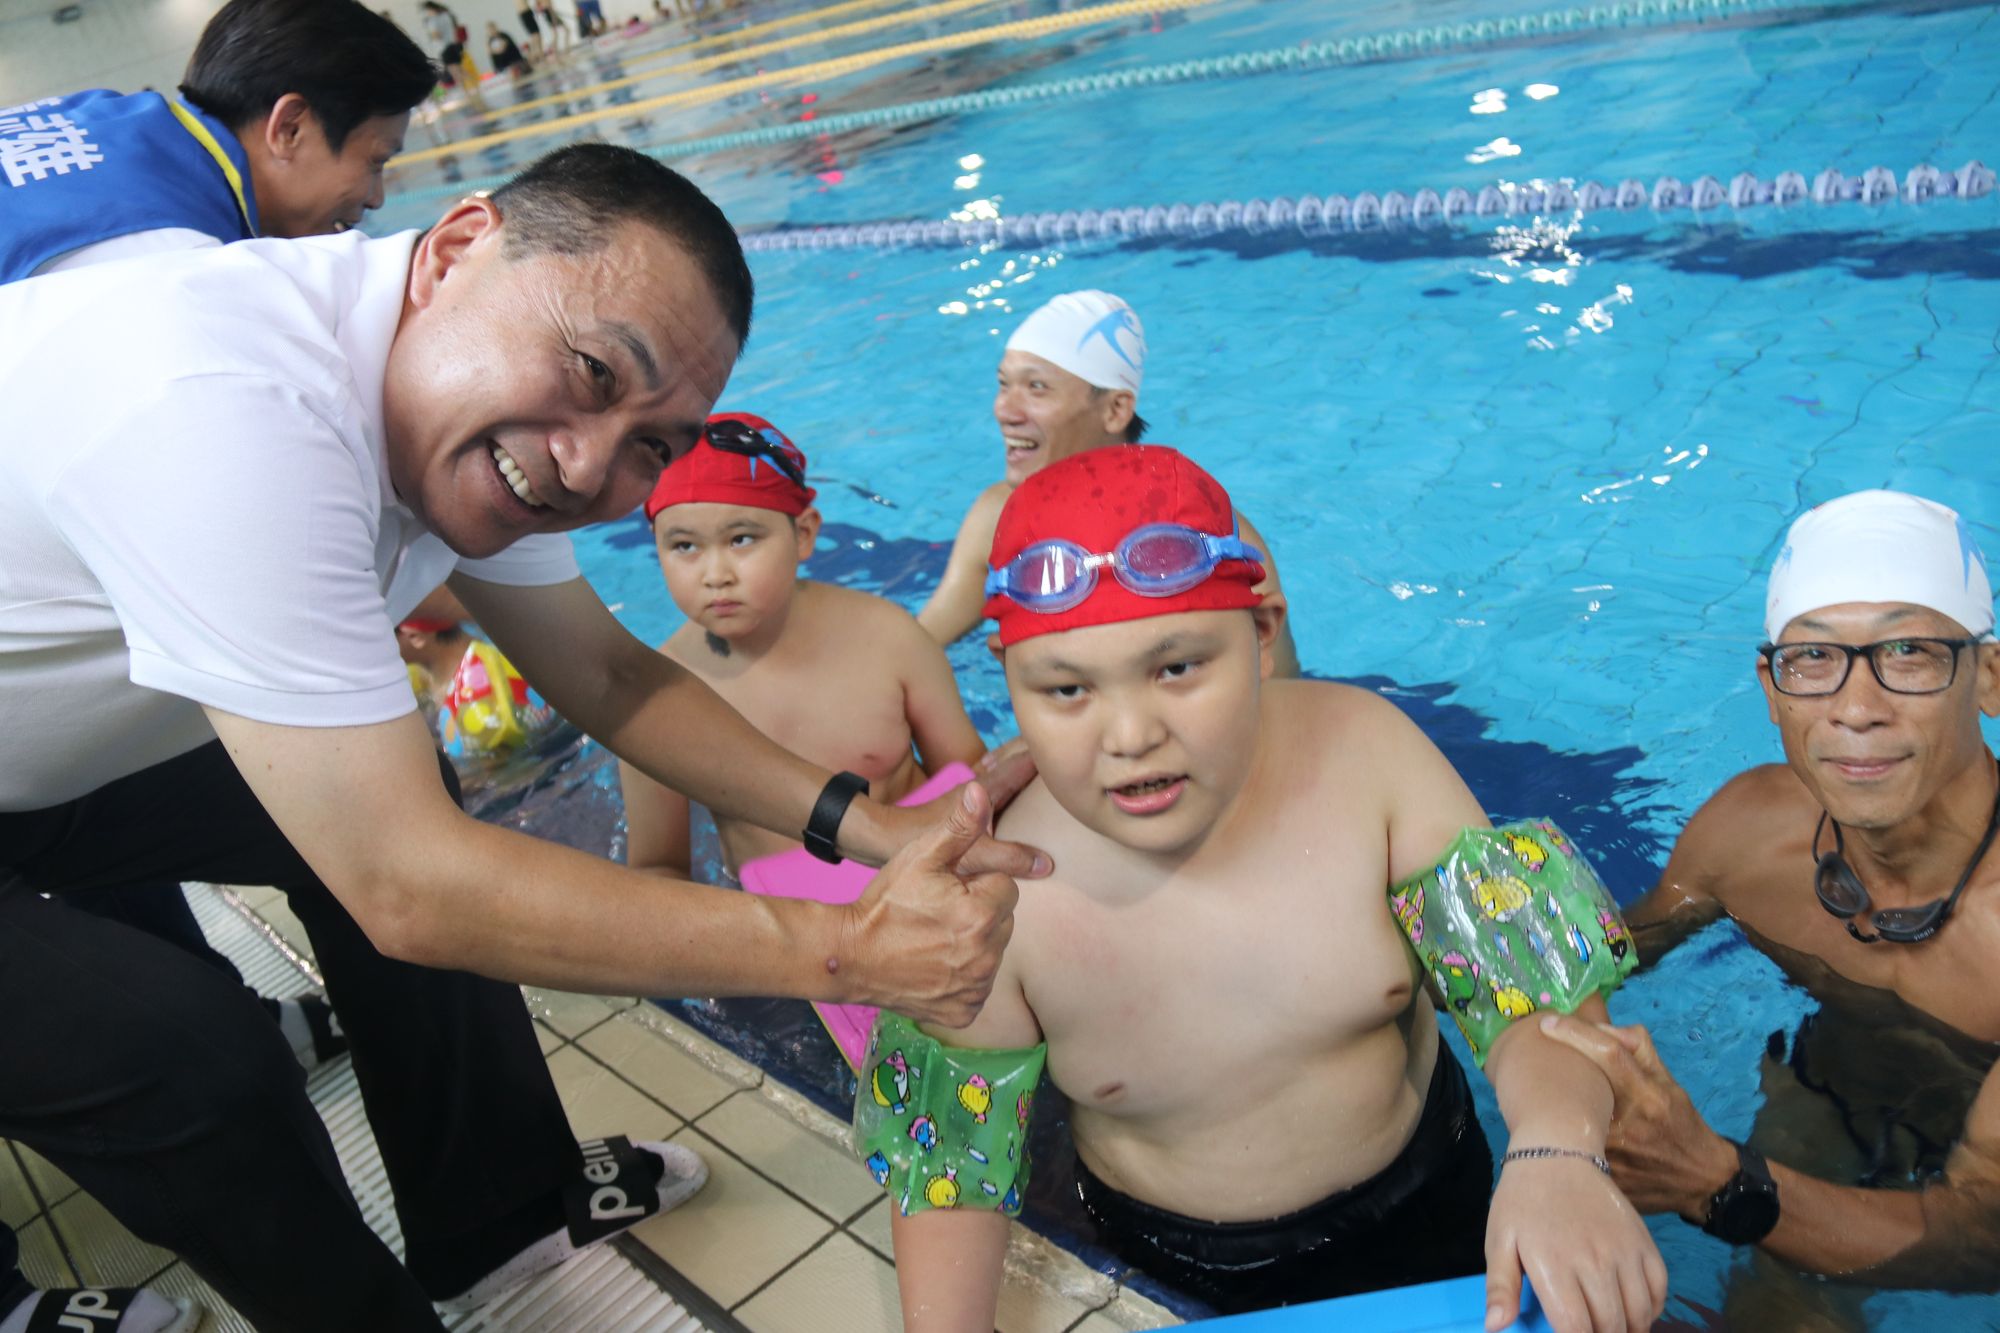 樹林參與式預算辦身心障礙孩童泳課 侯友宜期勉暢游生活泳抱健康